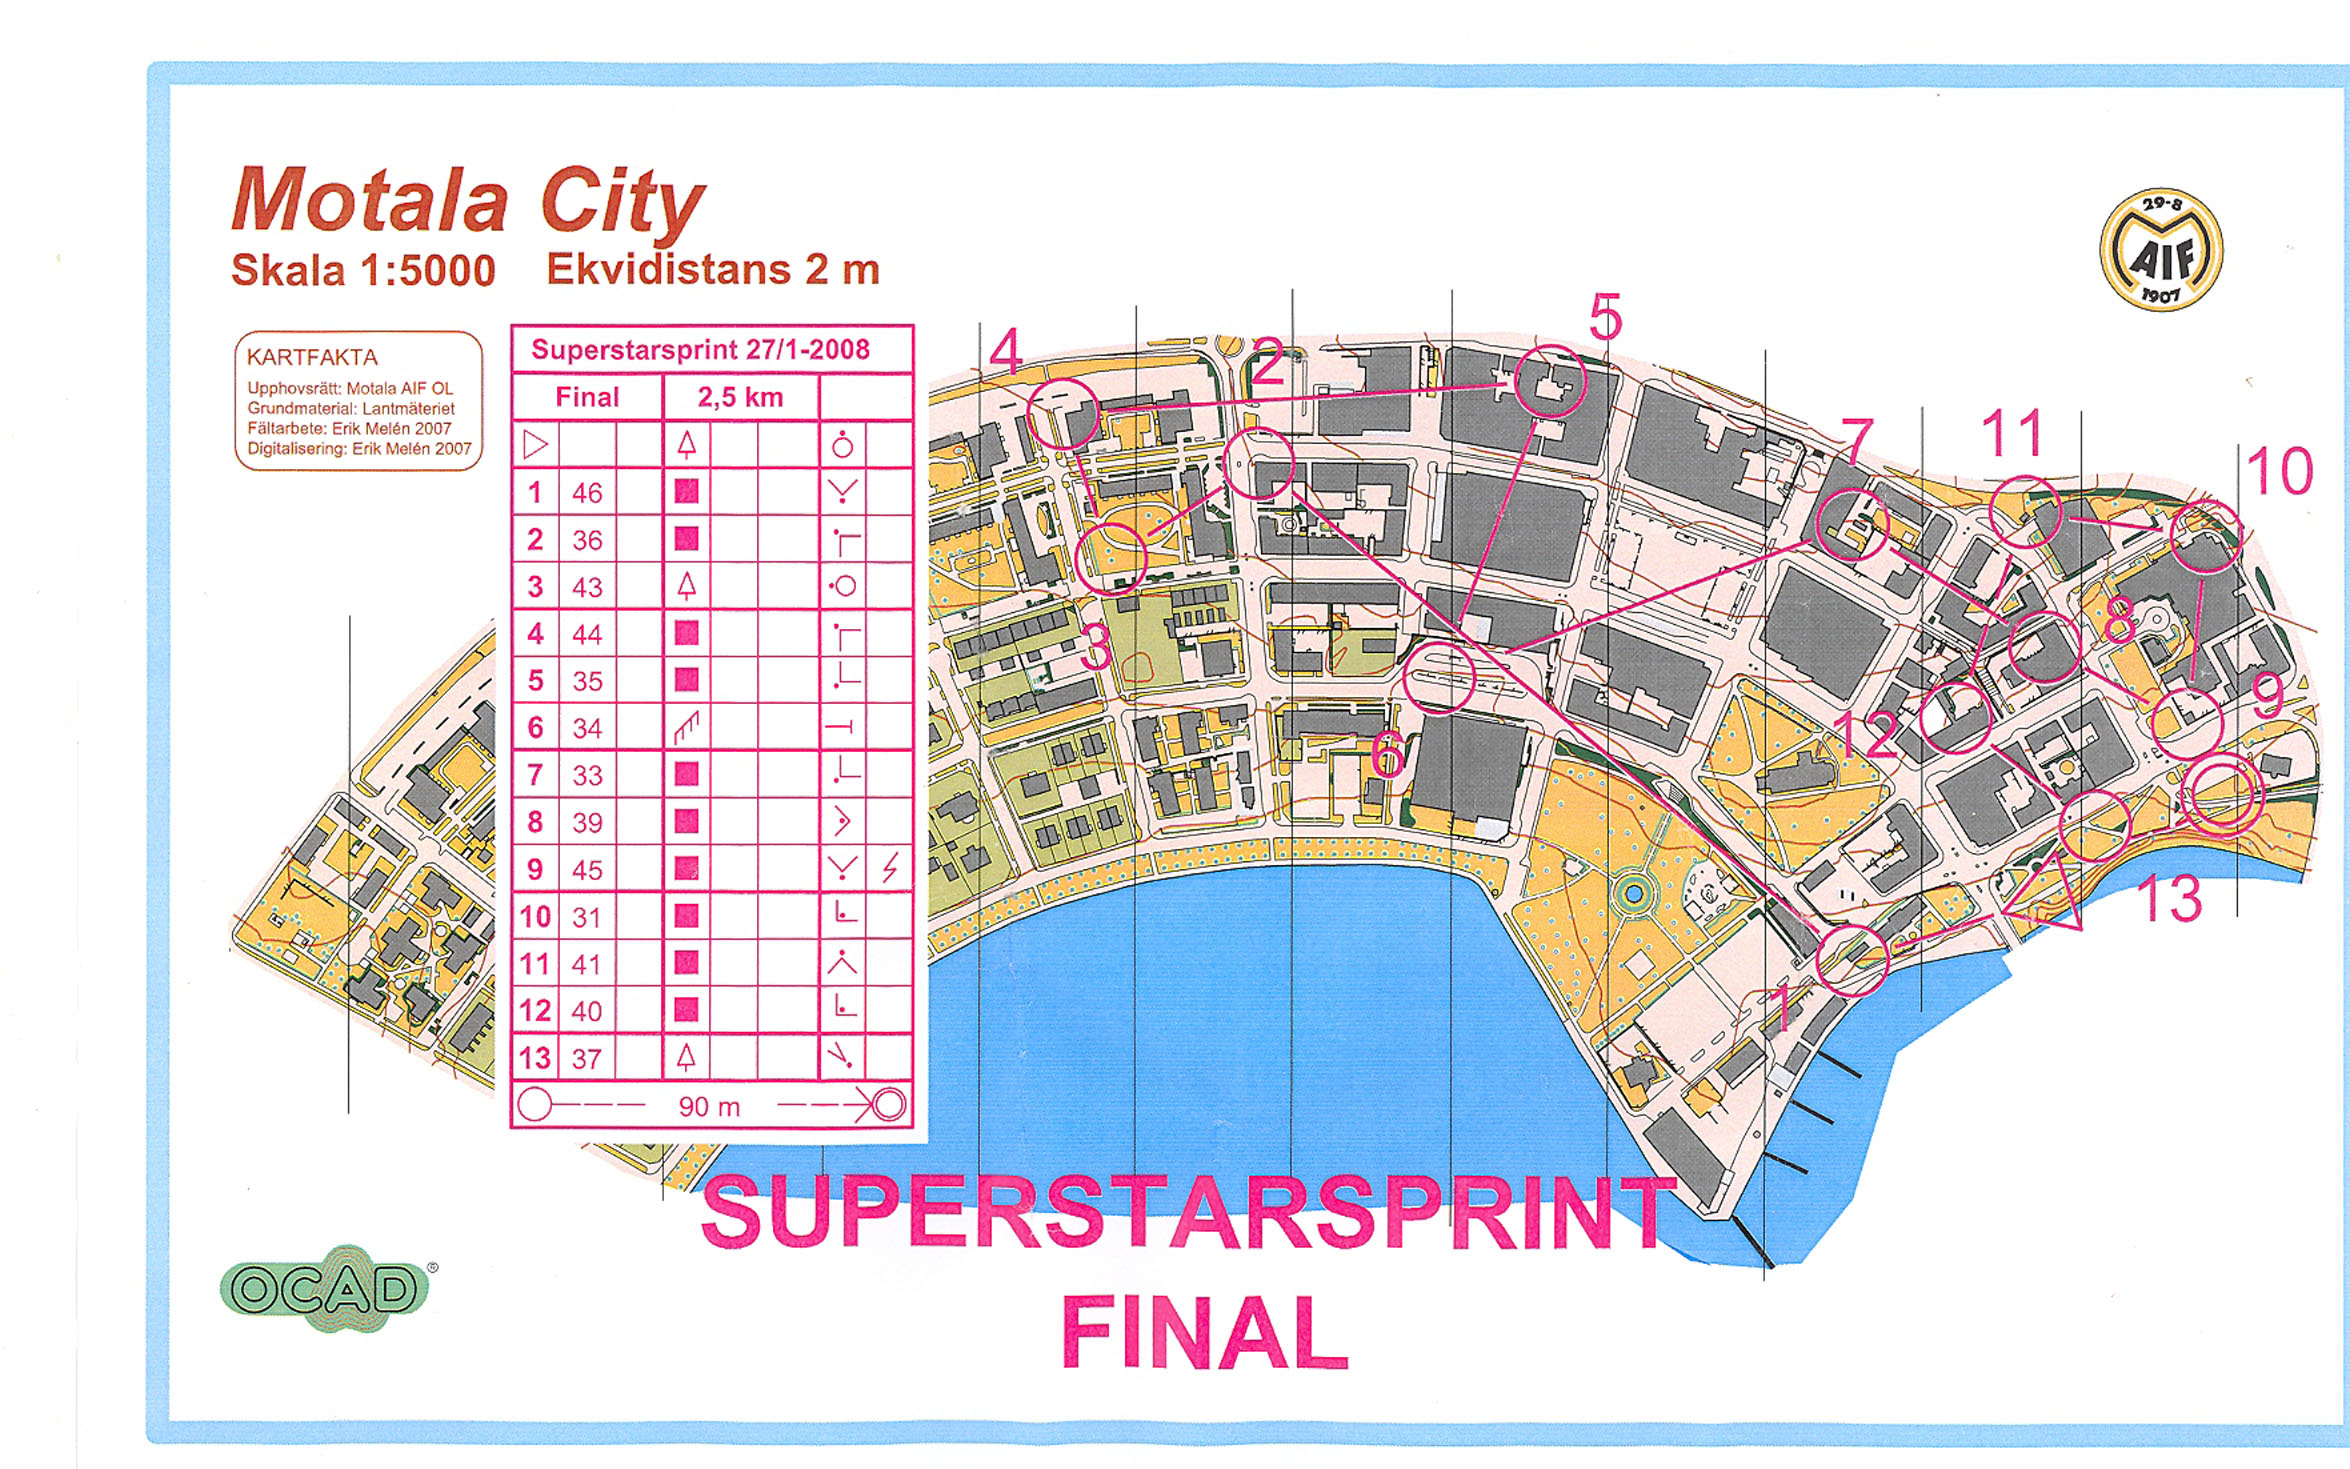 Superstarsprint Final (27.01.2008)